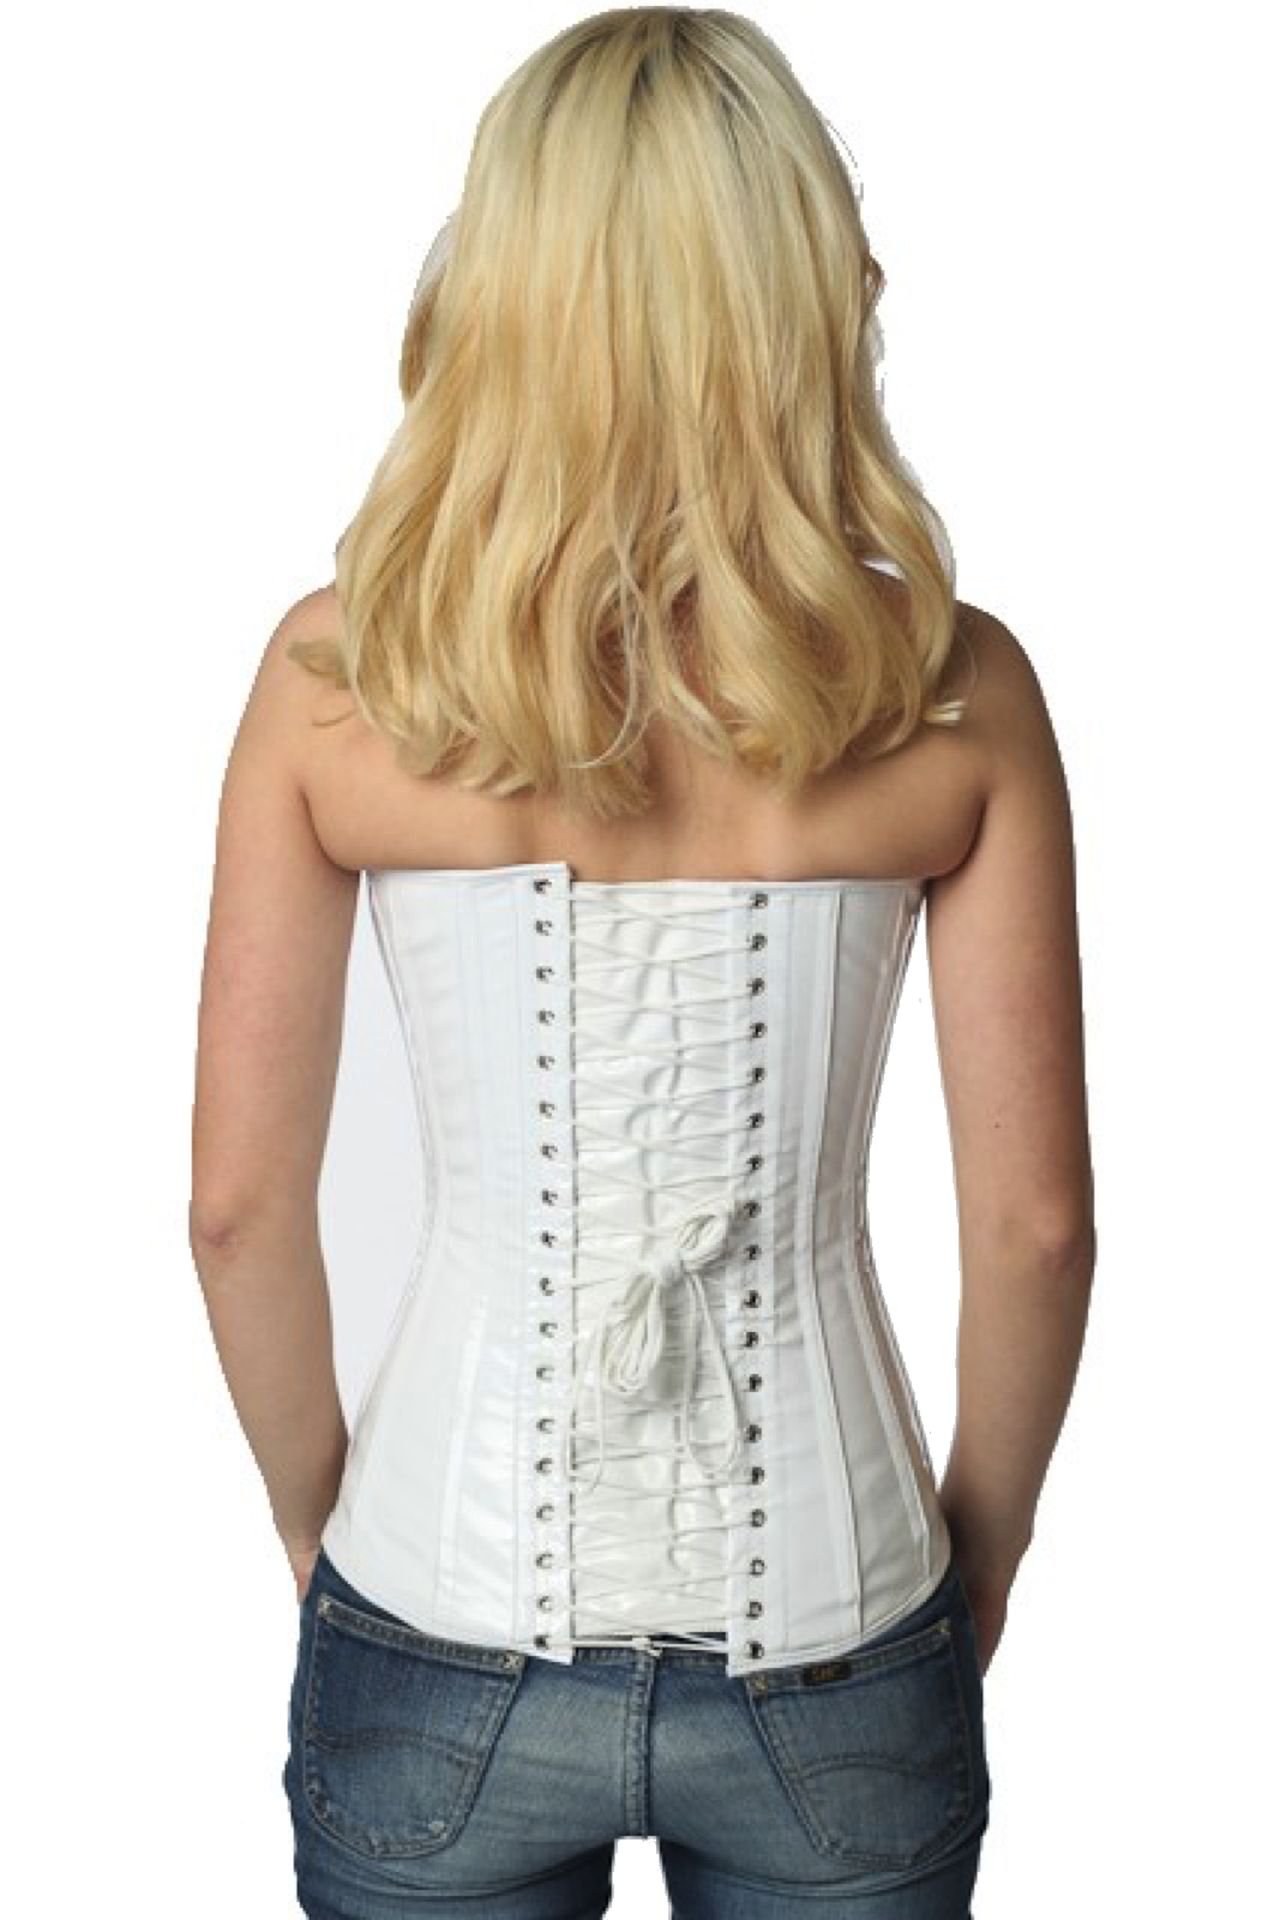 Lak corset wit volborst Korset px76